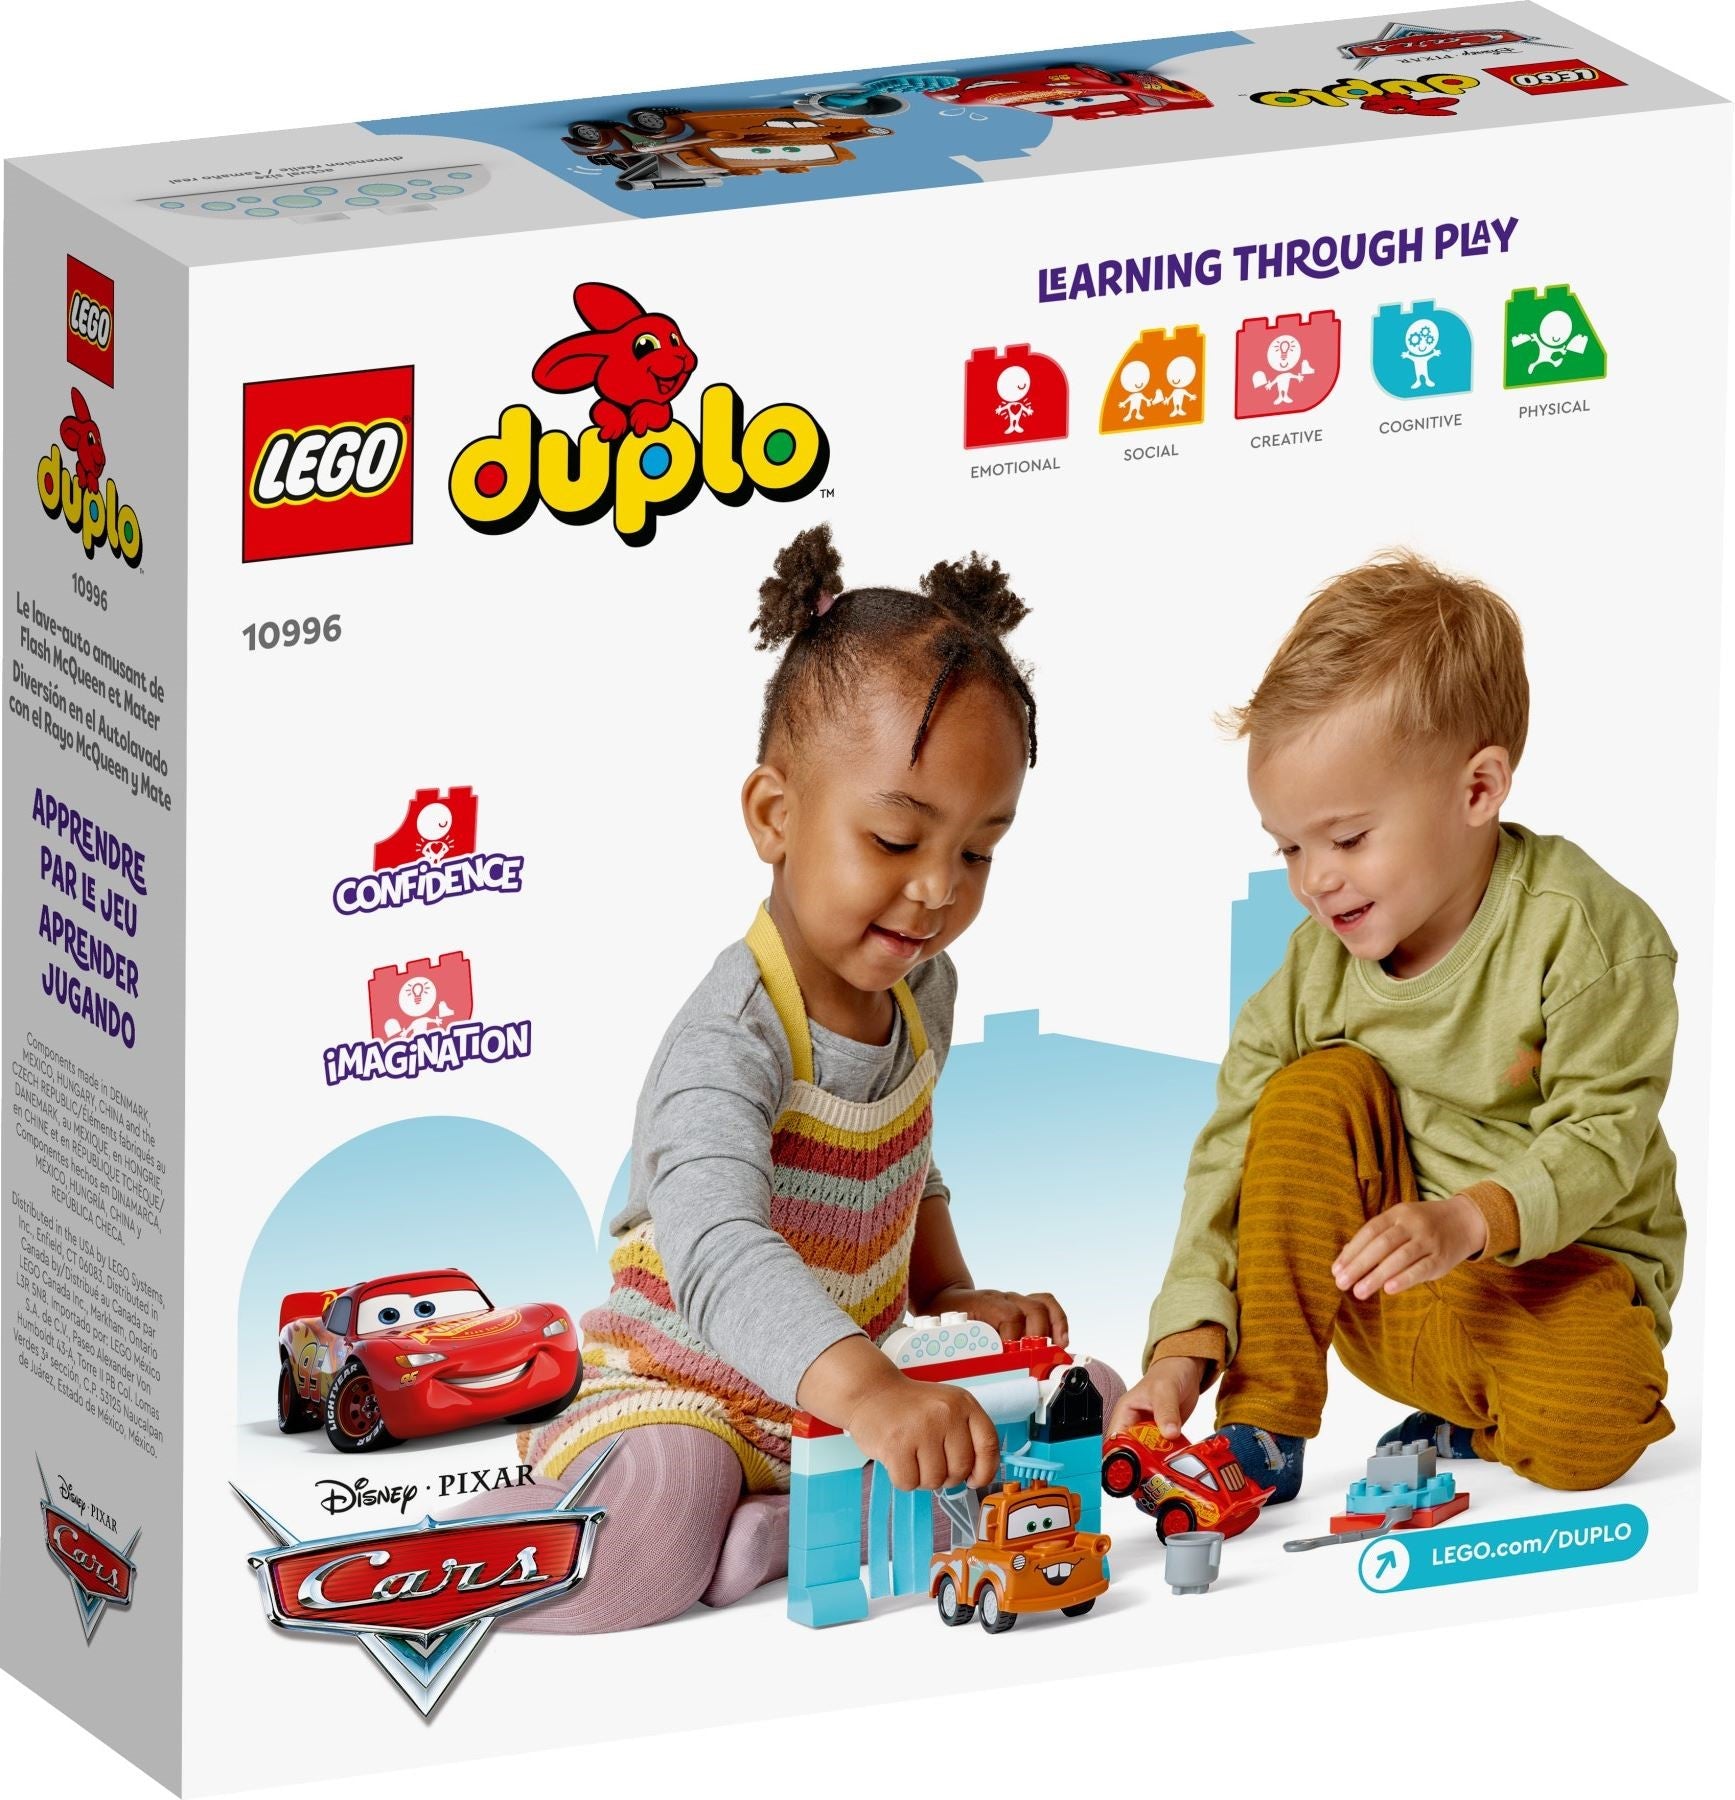 LEGO Duplo 10996 Salama McQueenin ja Martin Hauska Autopesu